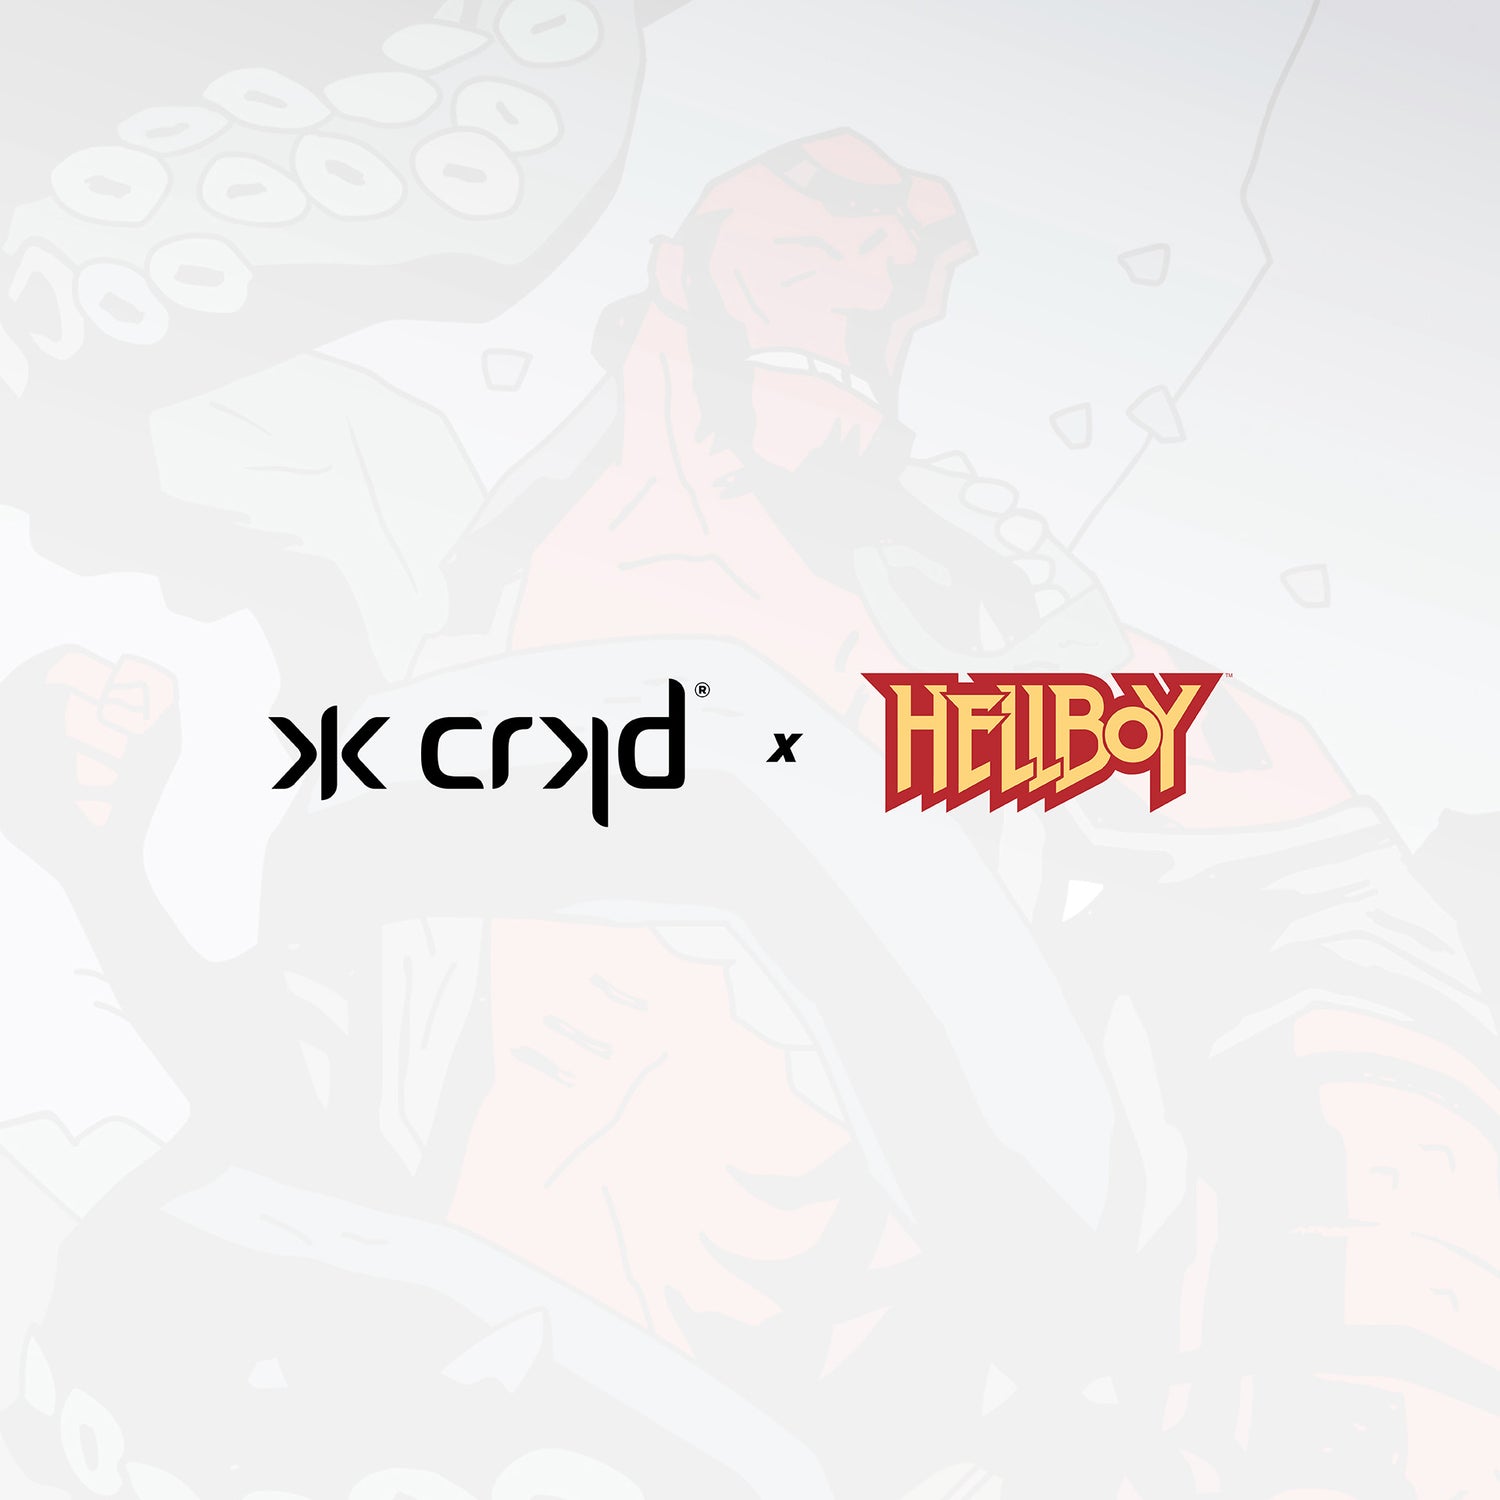 Introducing CRKD x Hellboy